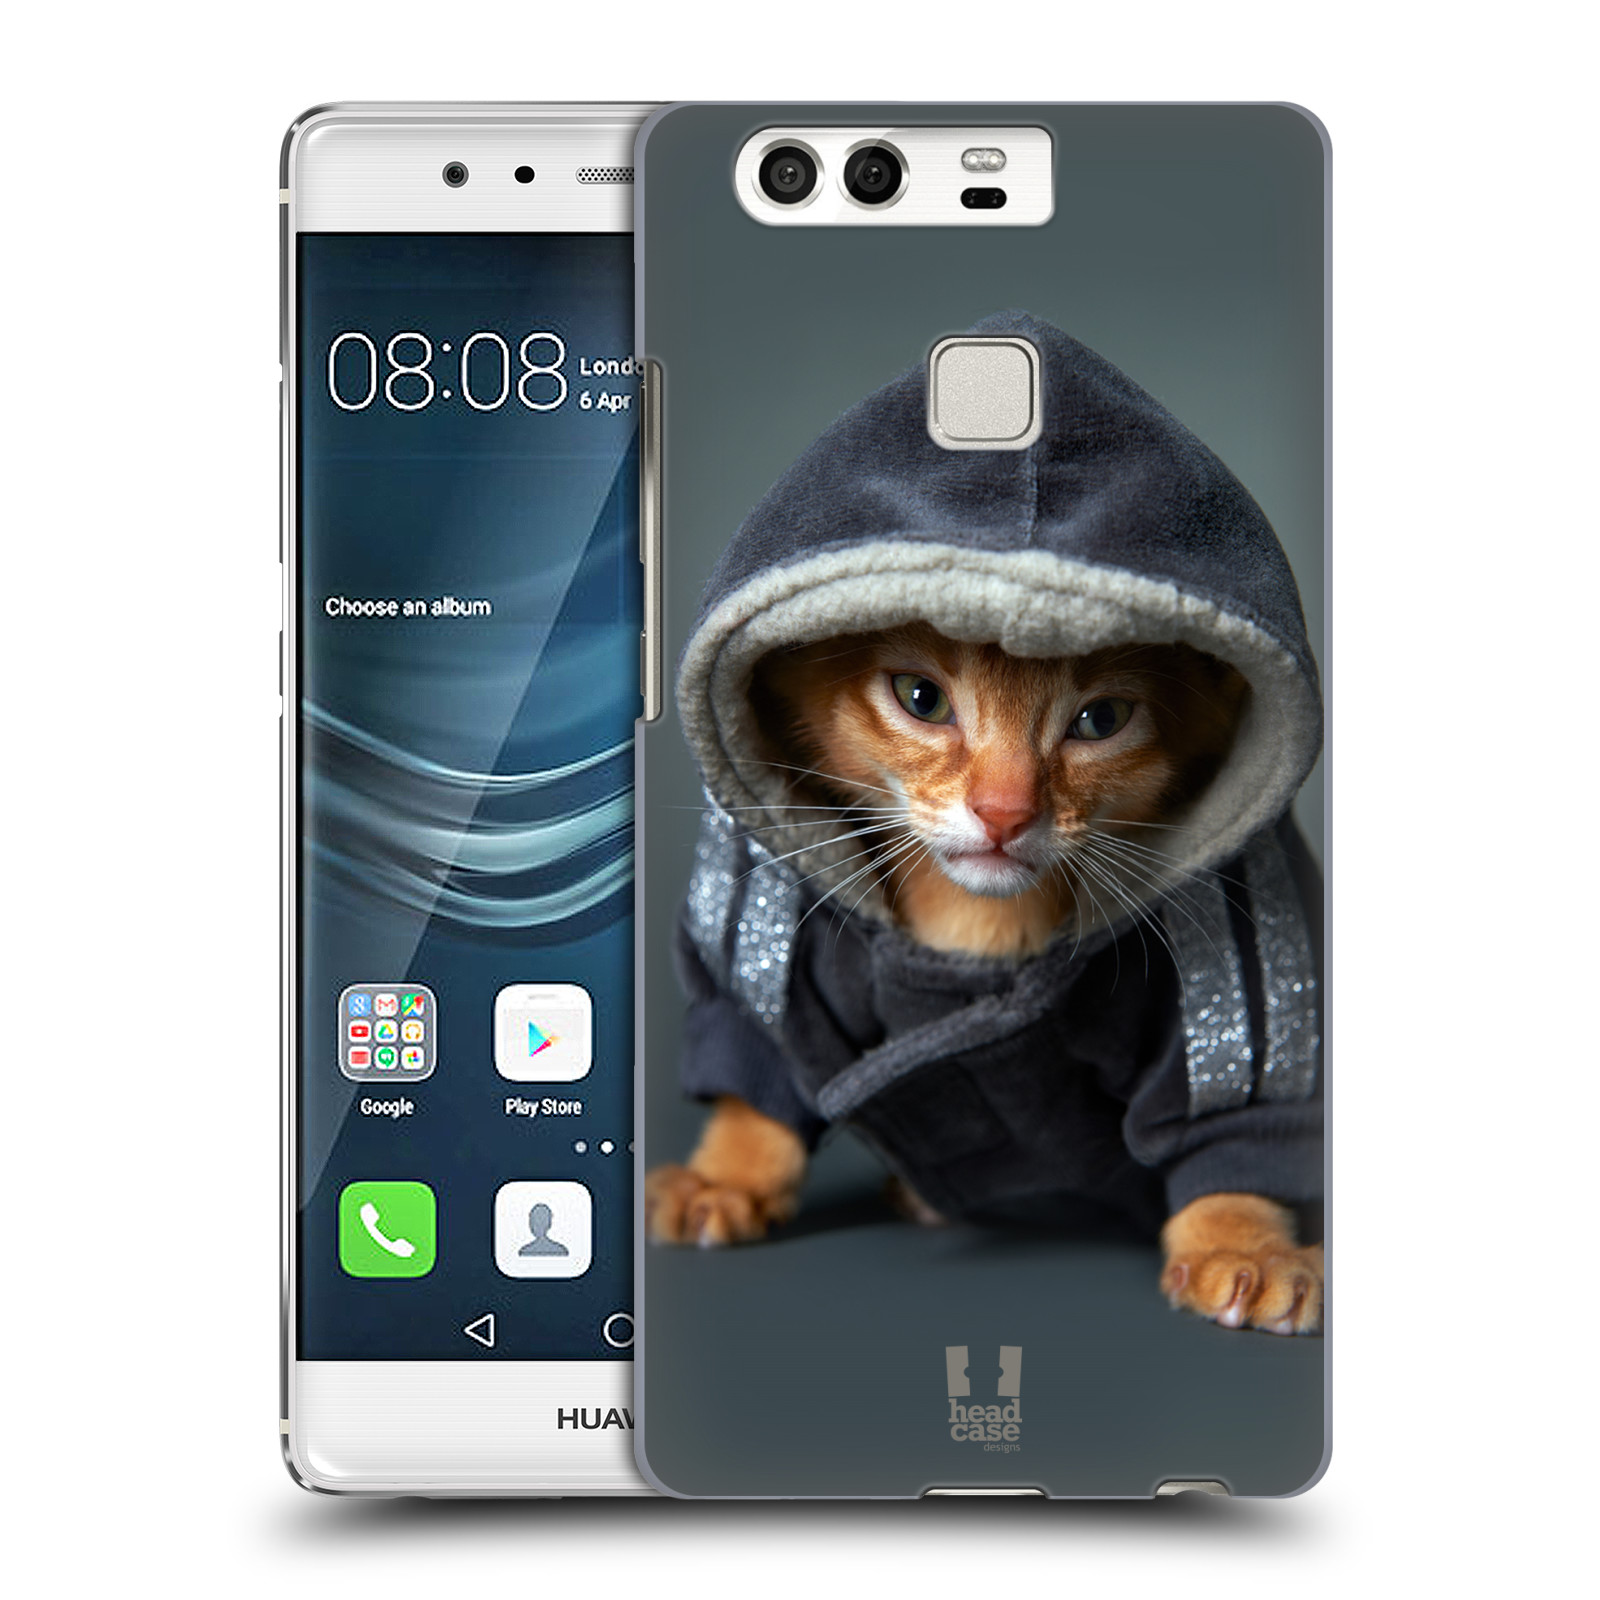 HEAD CASE plastový obal na mobil Huawei P9 / P9 DUAL SIM vzor Legrační zvířátka kotě/kočička s kapucí